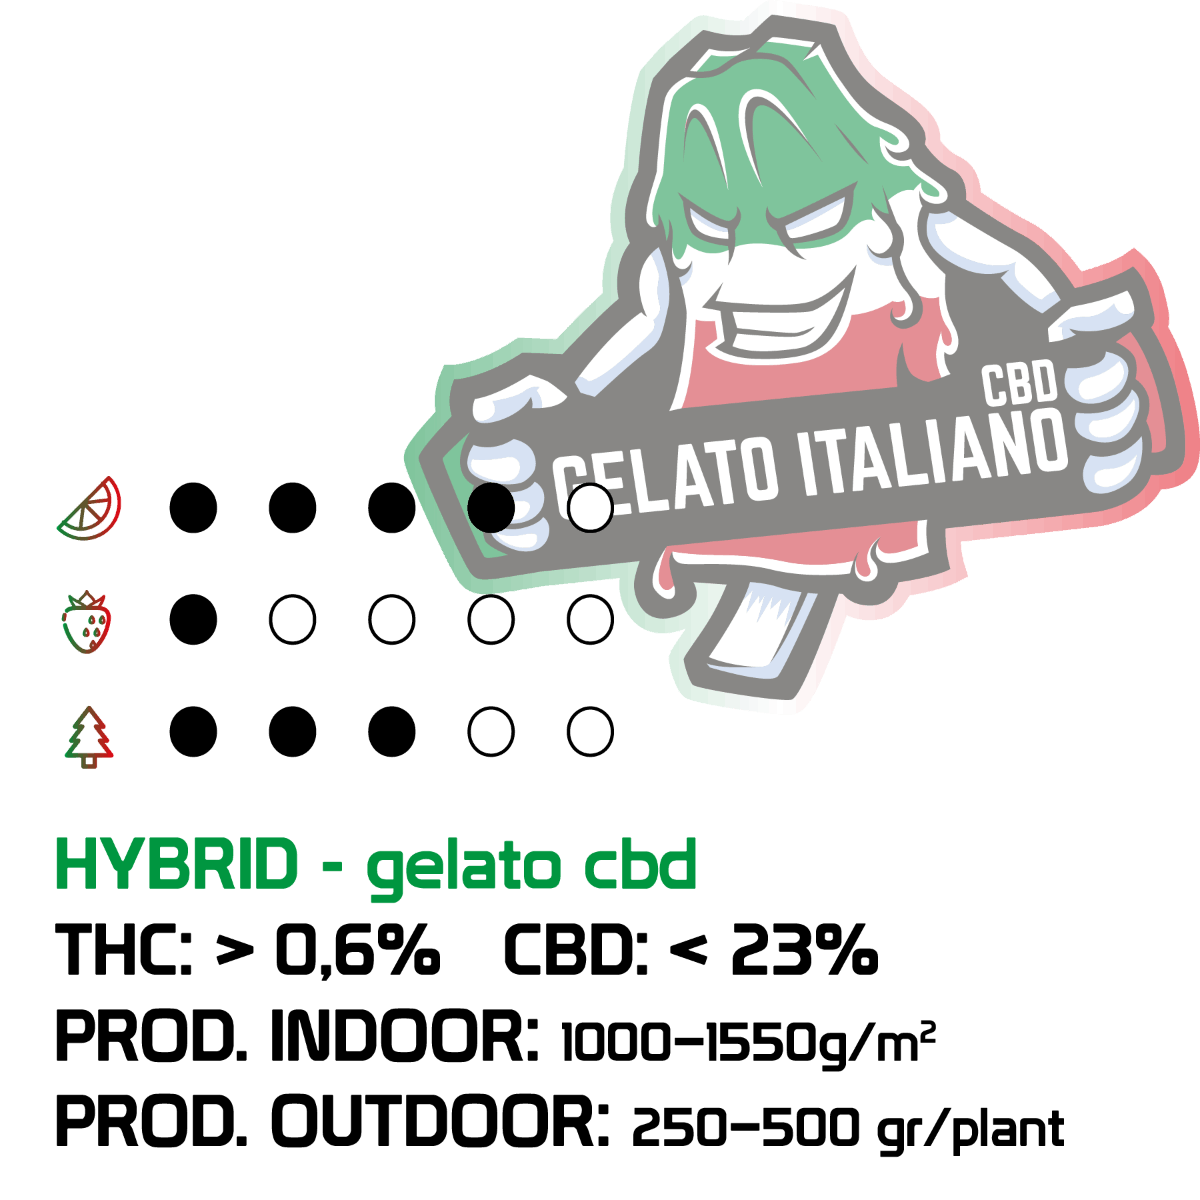 Gelato Italiano Semi Regular | THC 25% CBD 1% - mamamary